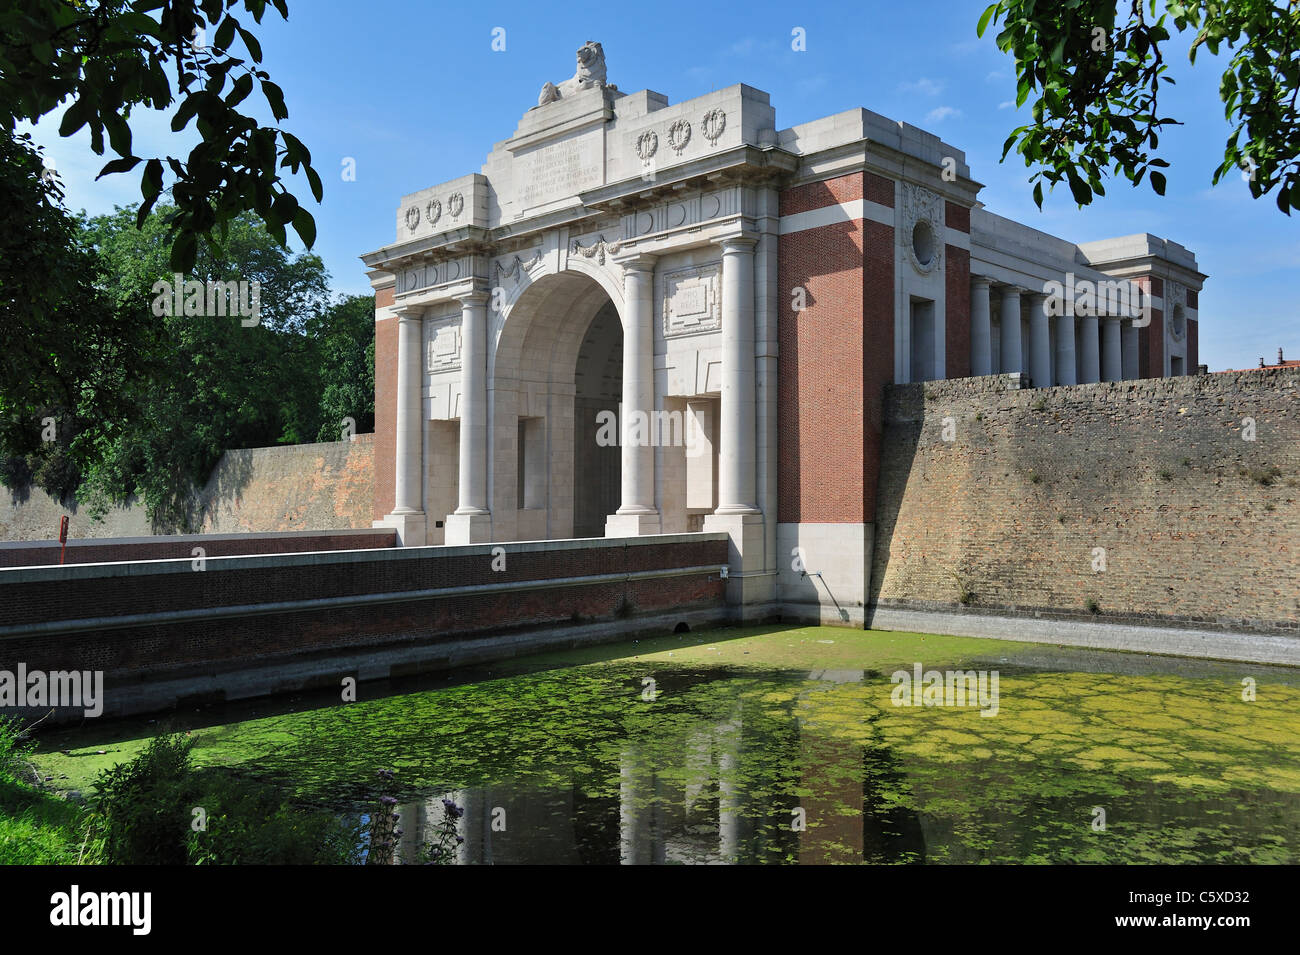 Menin Gate Memorial auf die fehlende in Gedenken an britischen und Commonwealth-Soldaten des ersten Weltkrieges, Ypern, Belgien Stockfoto